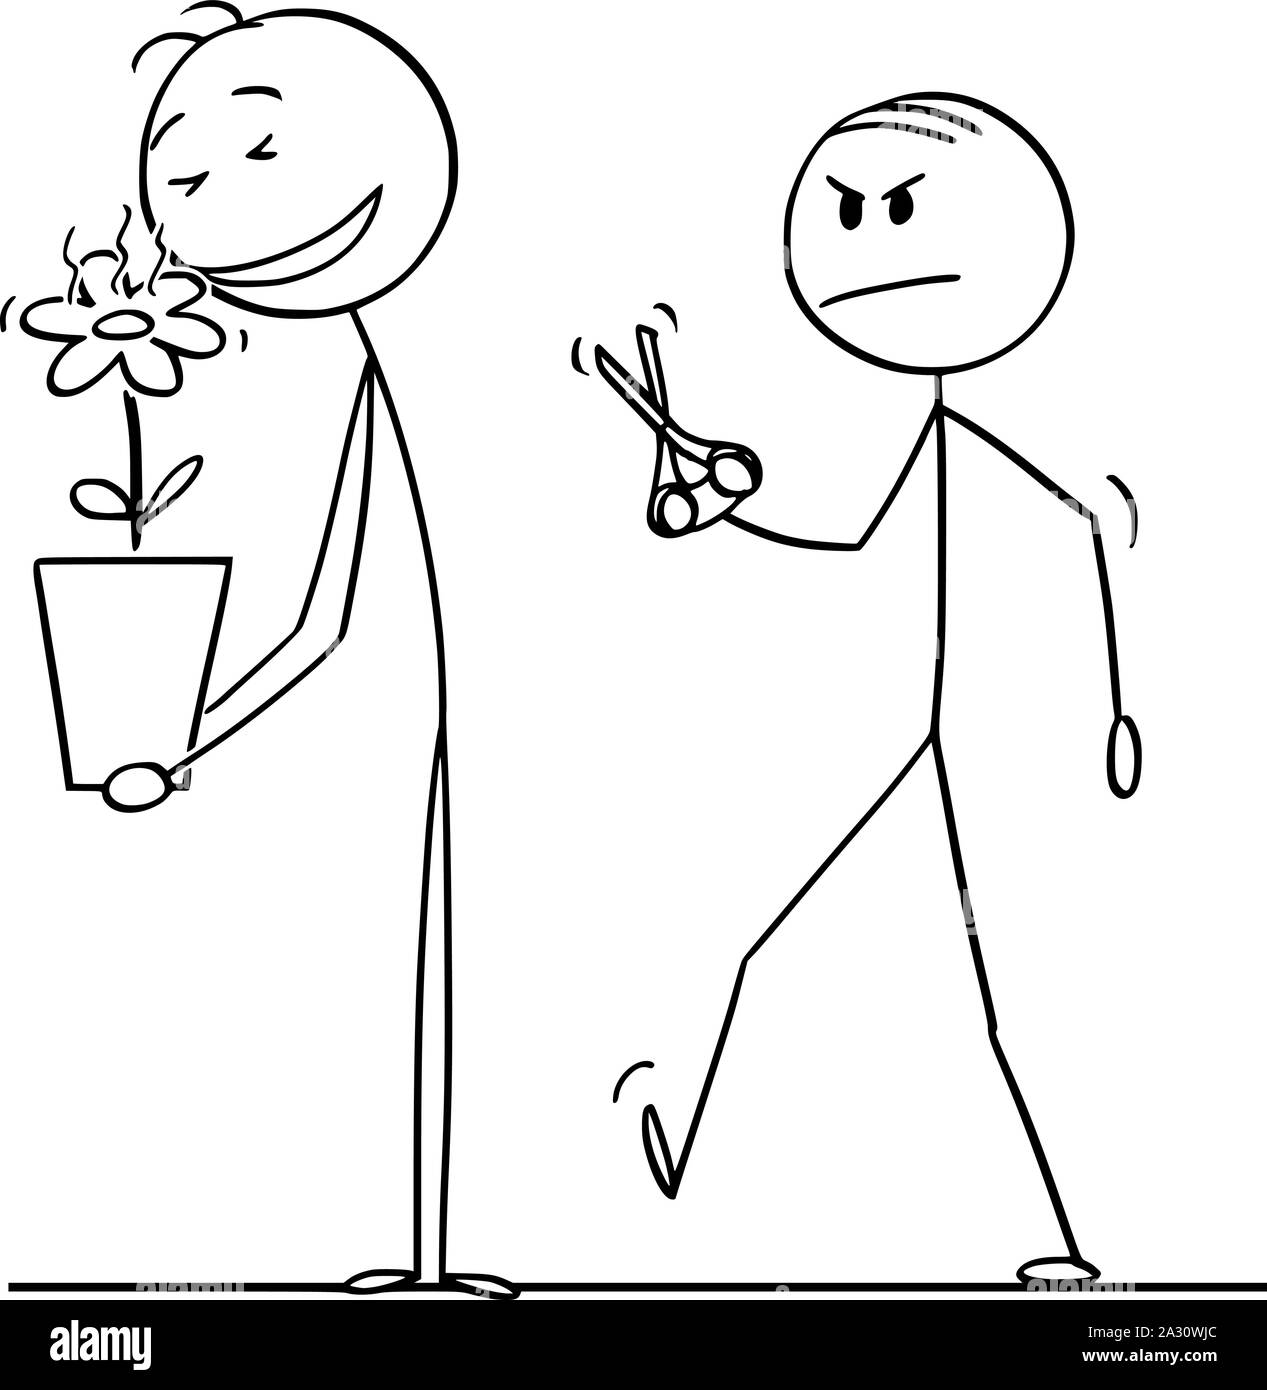 Vector cartoon stick figure dessin illustration conceptuelle de l'homme jouissant d'une odeur de fleur magnifique plante en pot, les envieux collègue va à l'aide de ciseaux. Illustration de Vecteur